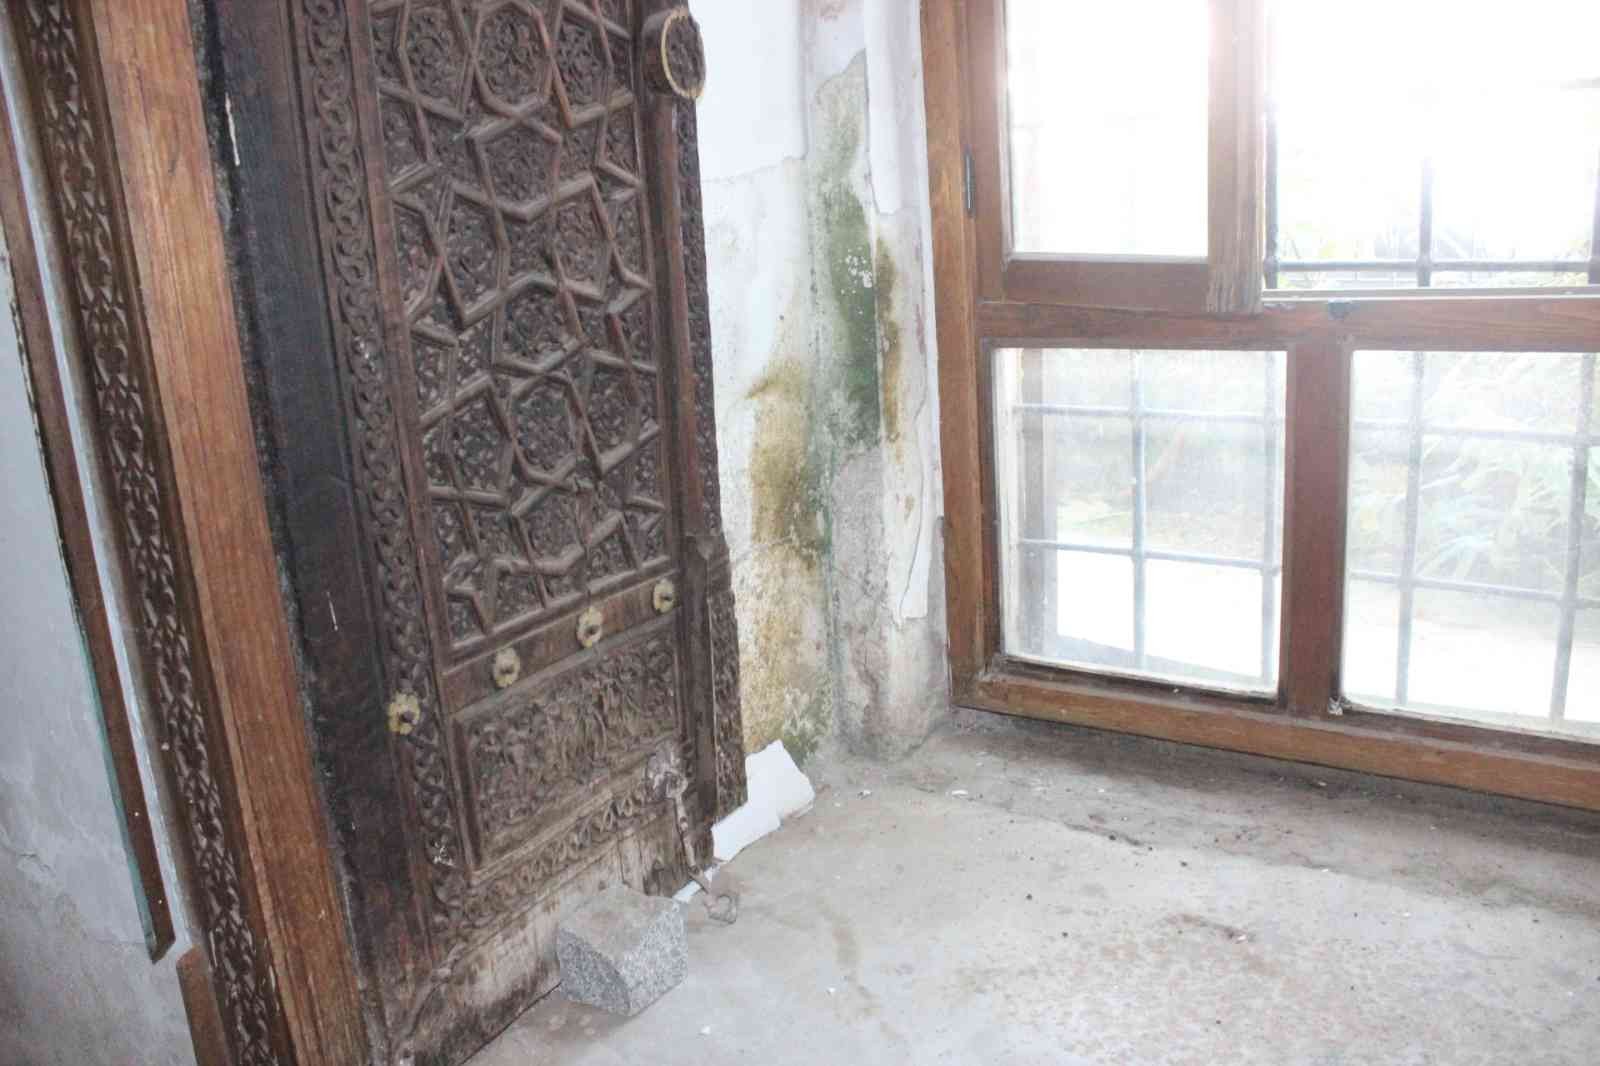 Ödemiş’in tarihi camisi ilgi bekliyor #izmir